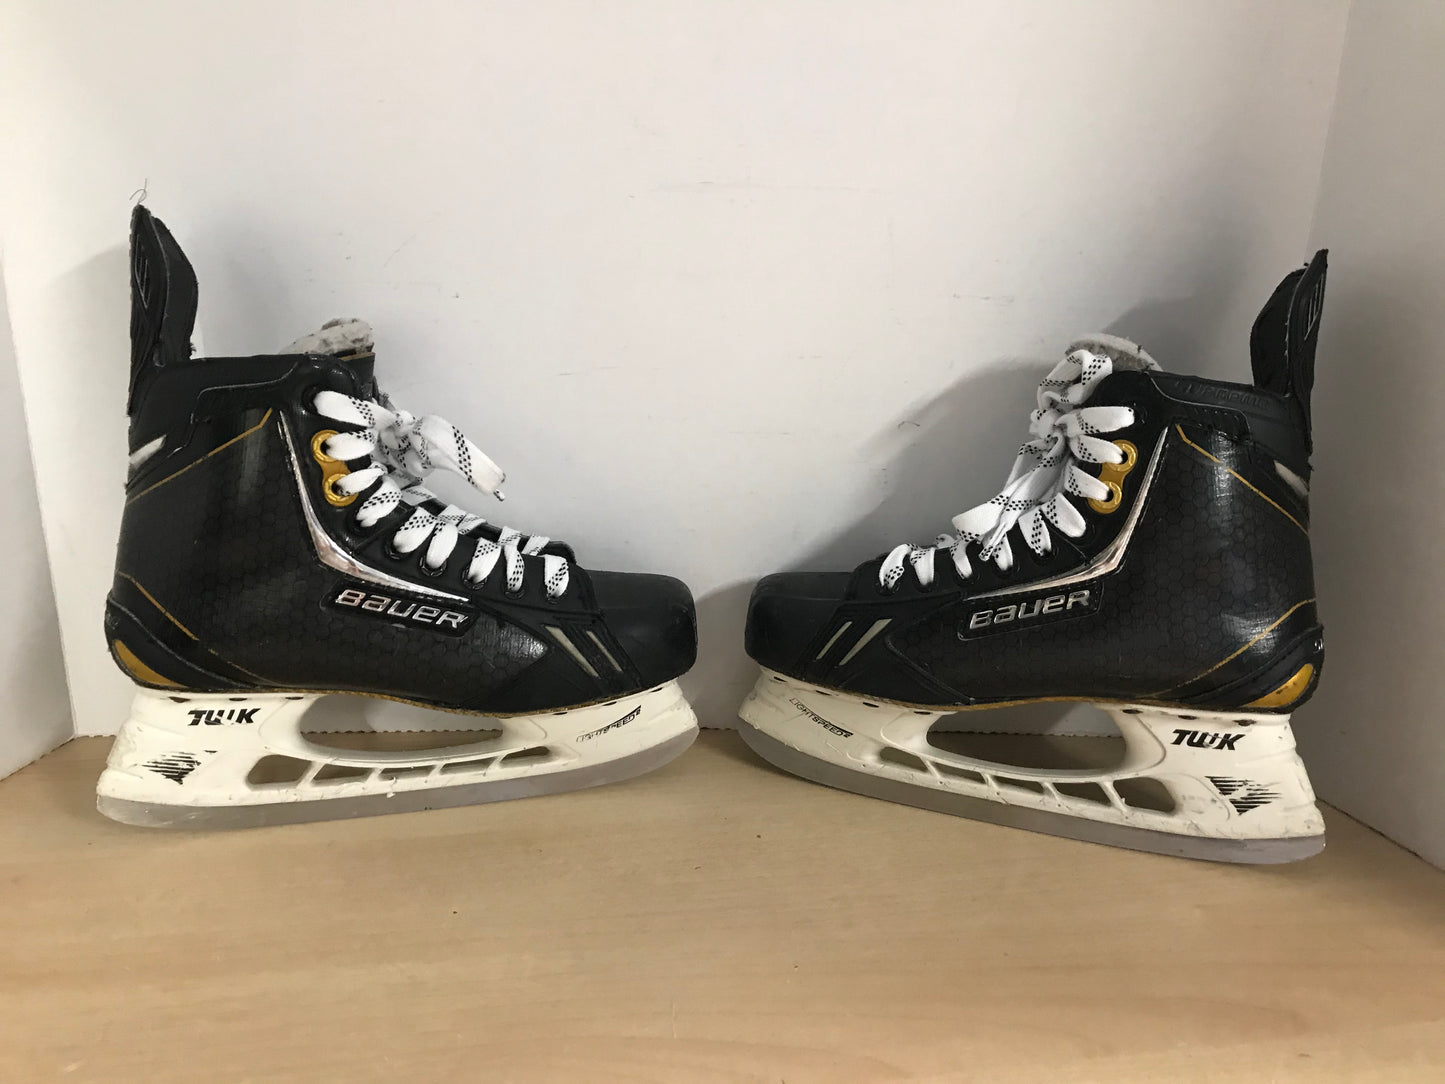 Hockey Skates Child Size 6 Shoe Size Junior Bauer Supreme One.9 Minor Wear Scratches